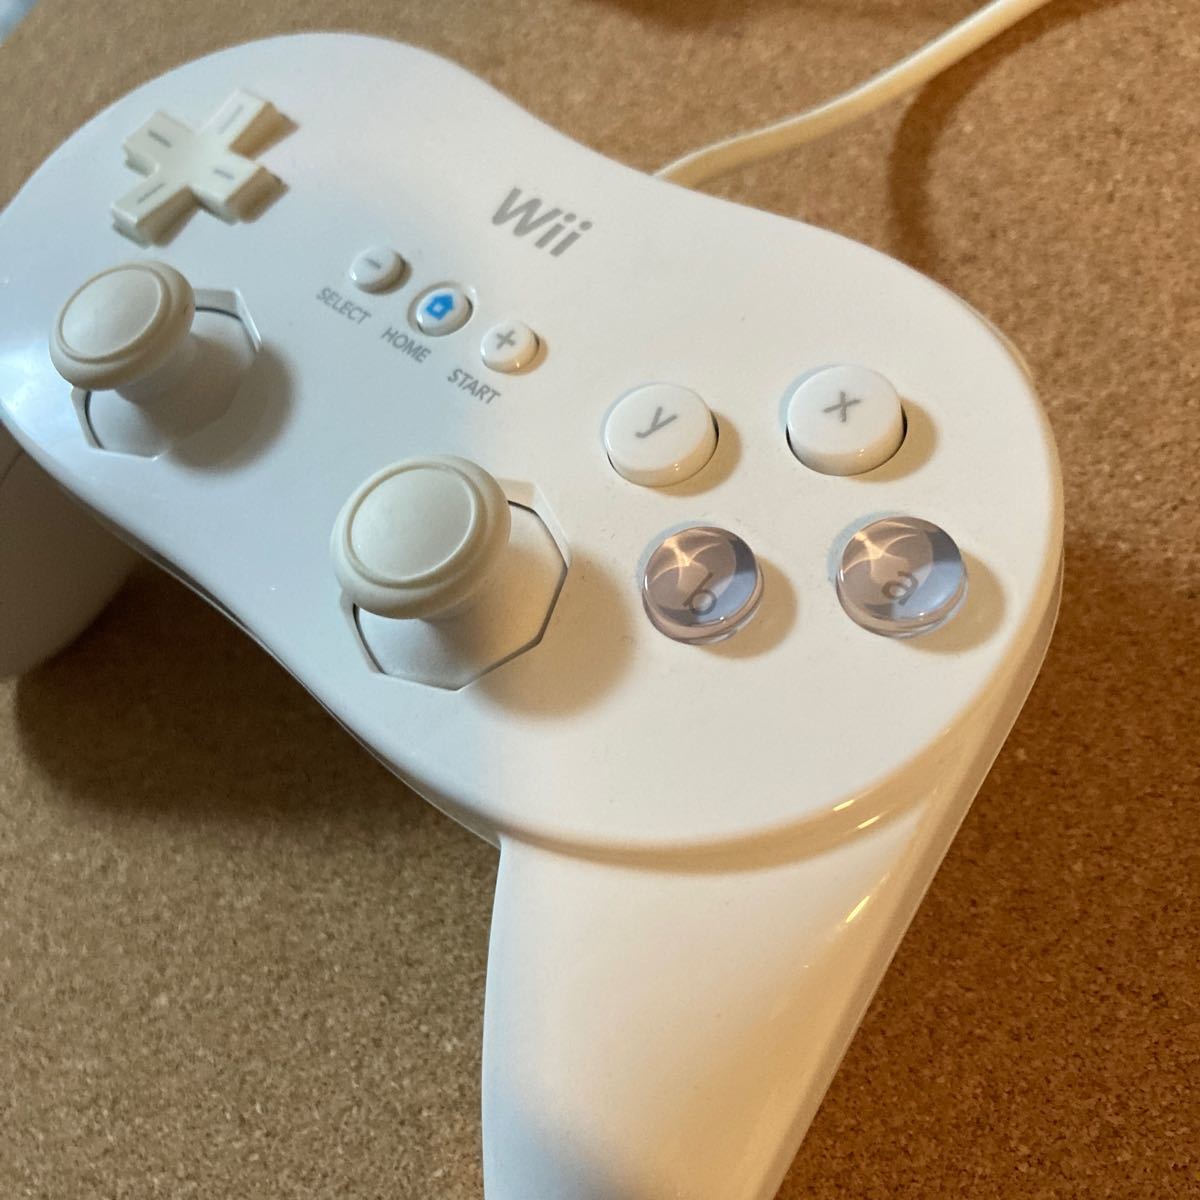 Wii クラシックコントローラーPRO2個